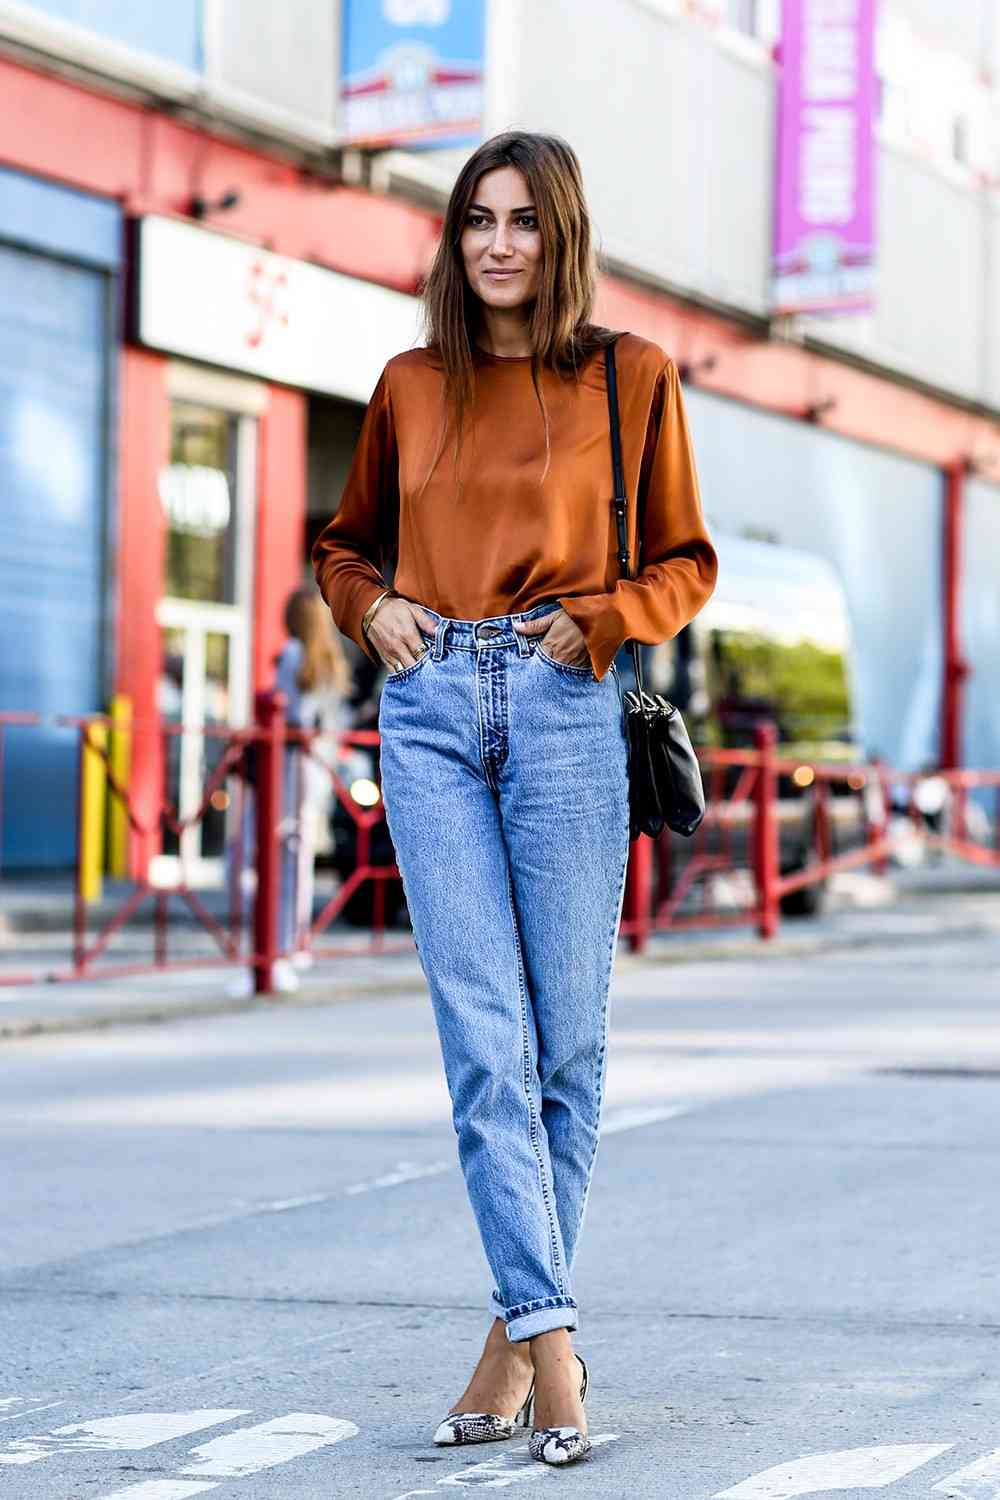 Os jeans da mamãe combinam as tendências da moda com a camisa dos sapatos com estampa de cobra 2019